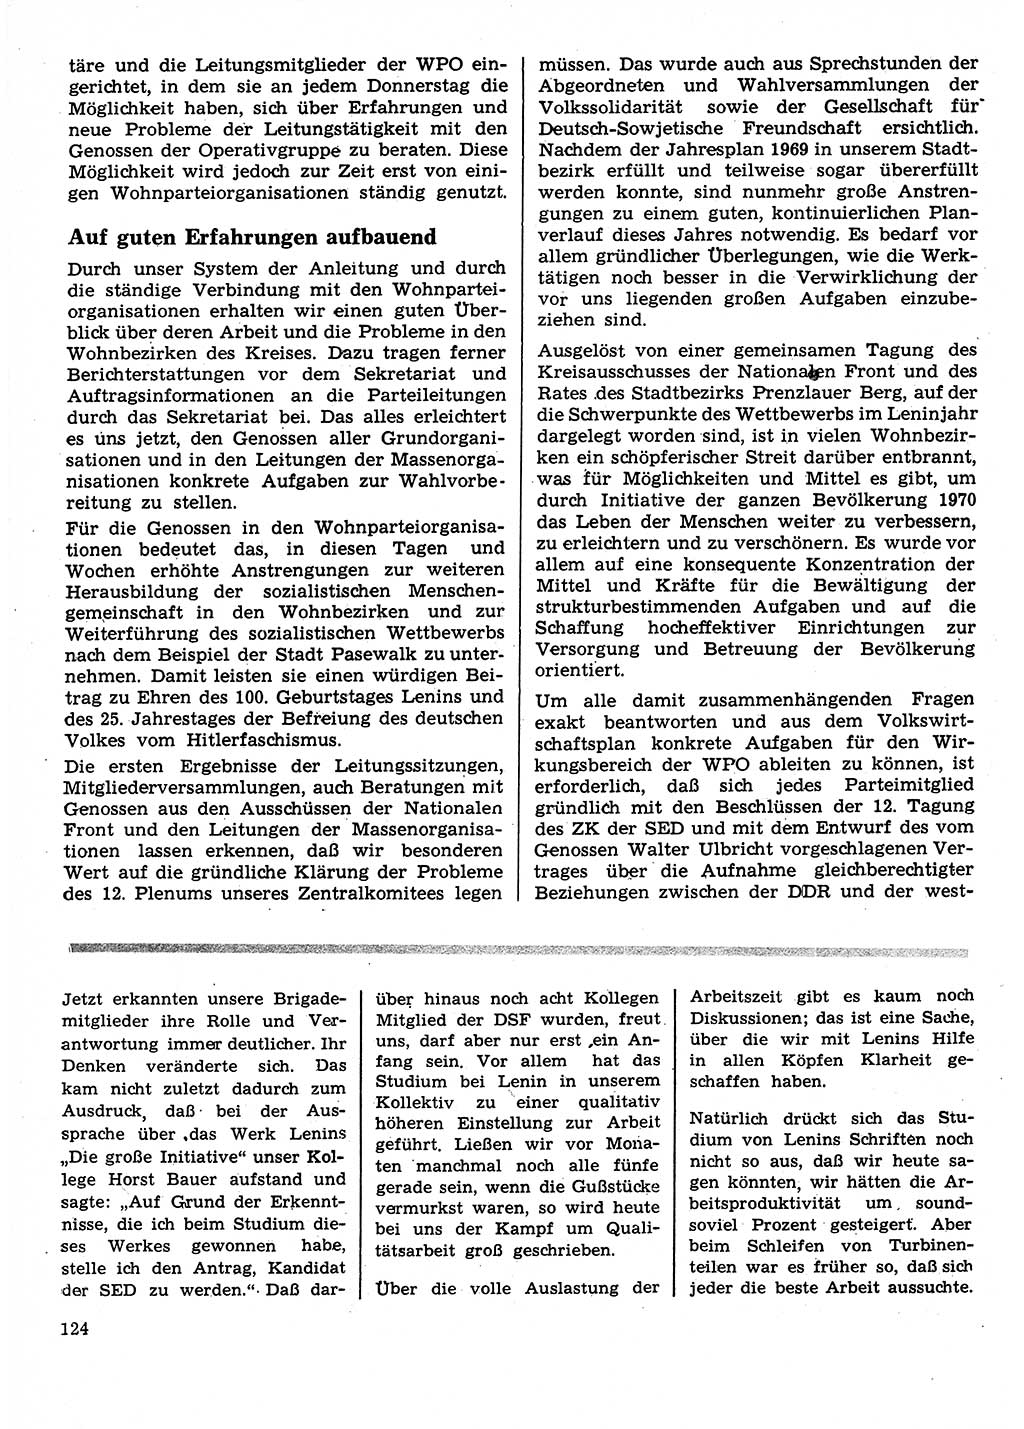 Neuer Weg (NW), Organ des Zentralkomitees (ZK) der SED (Sozialistische Einheitspartei Deutschlands) für Fragen des Parteilebens, 25. Jahrgang [Deutsche Demokratische Republik (DDR)] 1970, Seite 124 (NW ZK SED DDR 1970, S. 124)